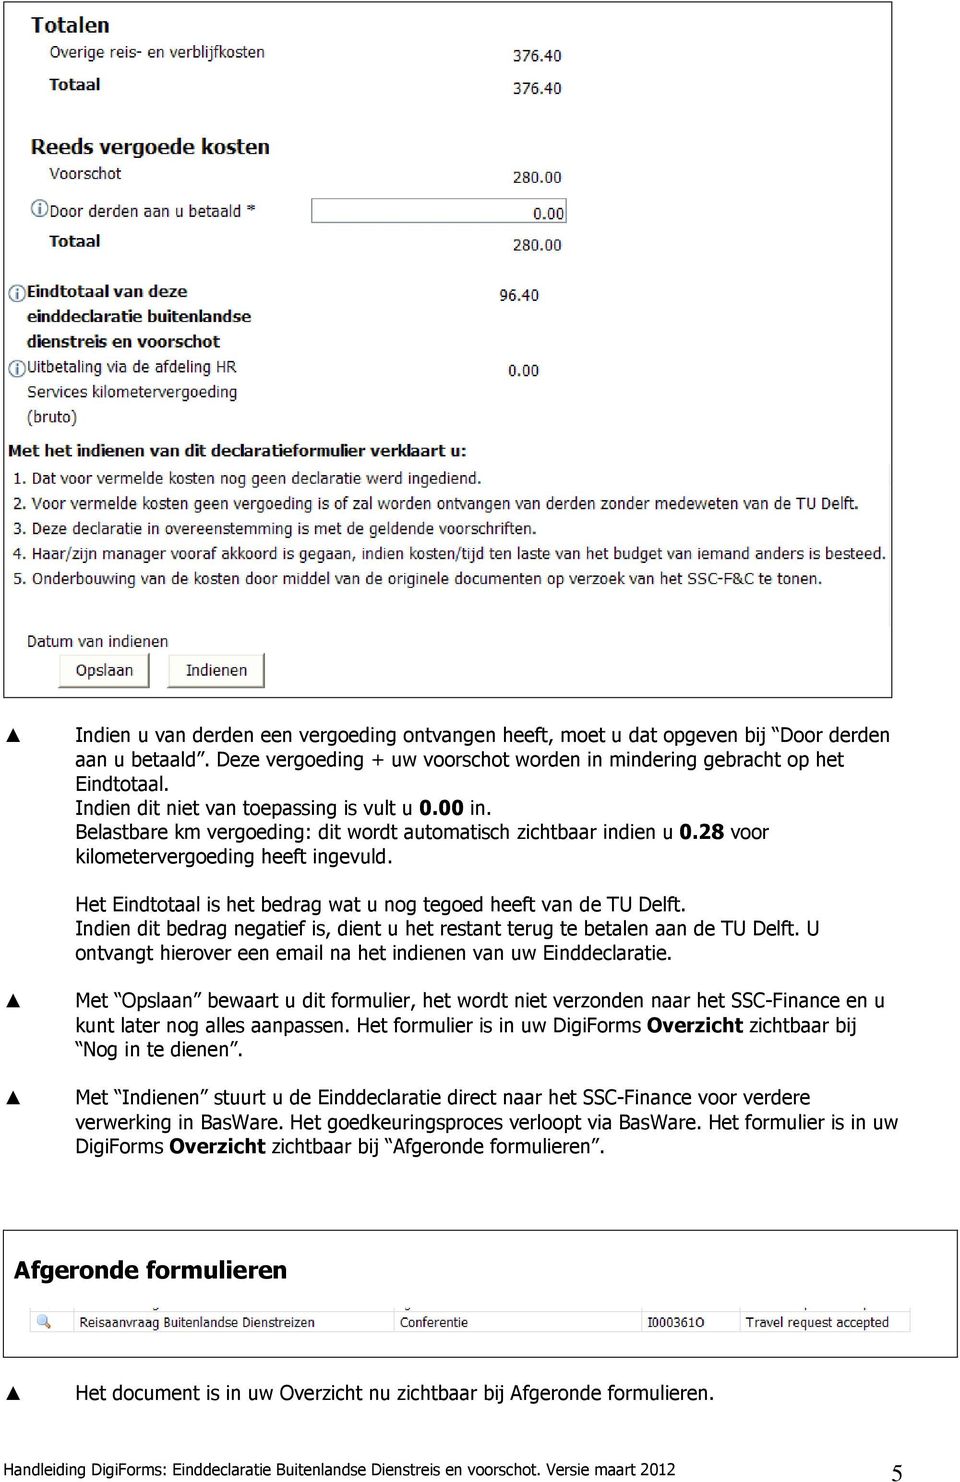 Het Eindtotaal is het bedrag wat u nog tegoed heeft van de TU Delft. Indien dit bedrag negatief is, dient u het restant terug te betalen aan de TU Delft.